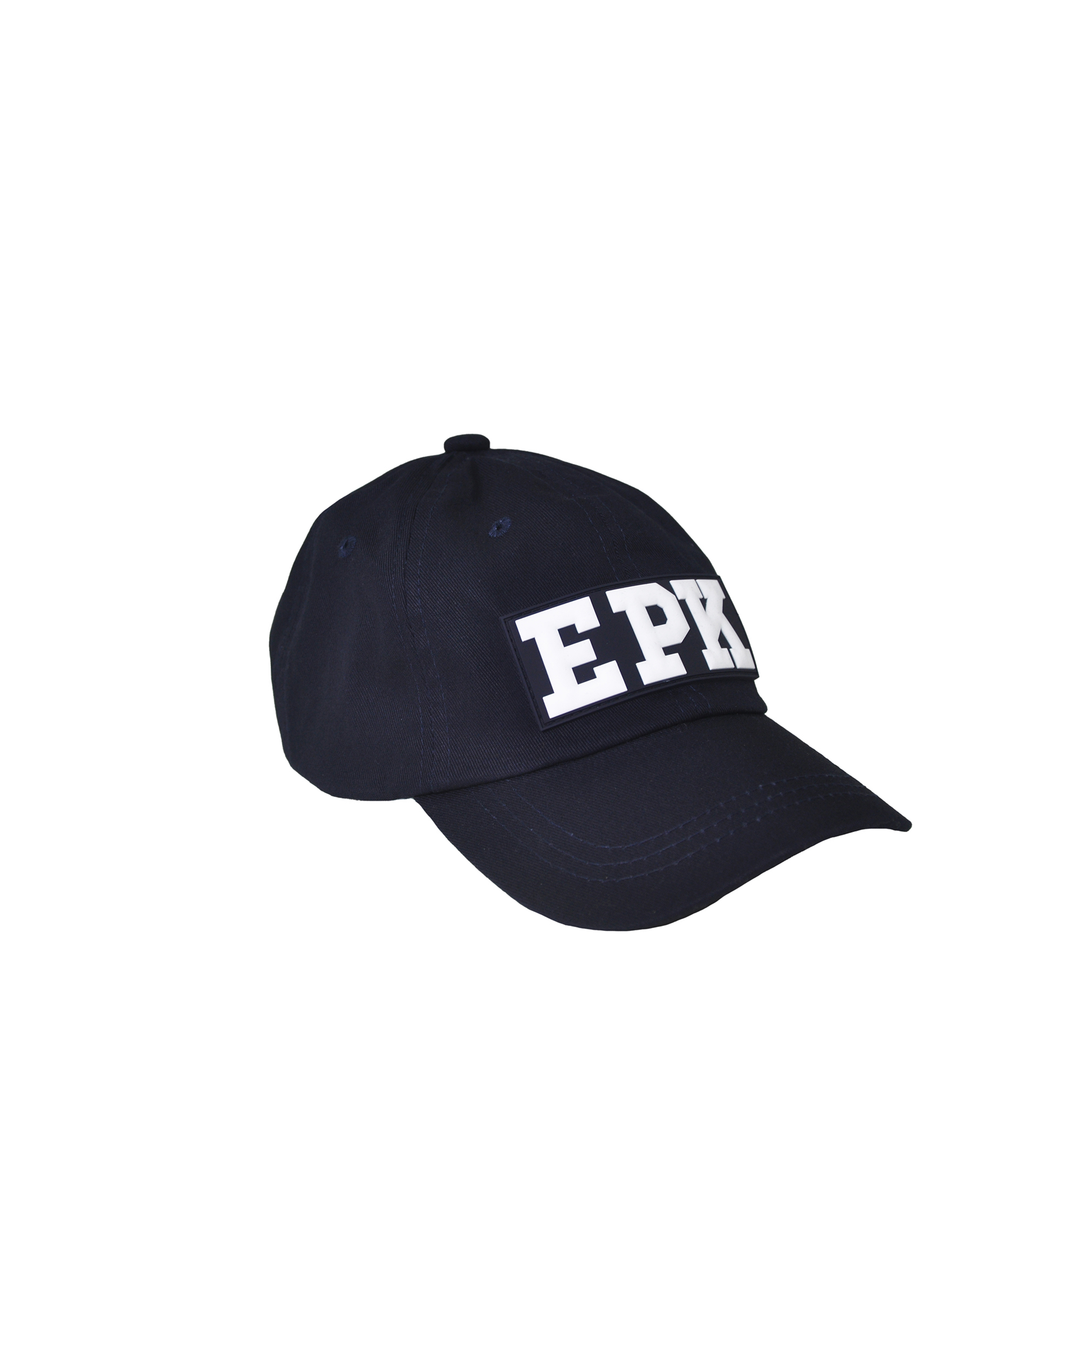 Gorra azul marina con EPK en blanco